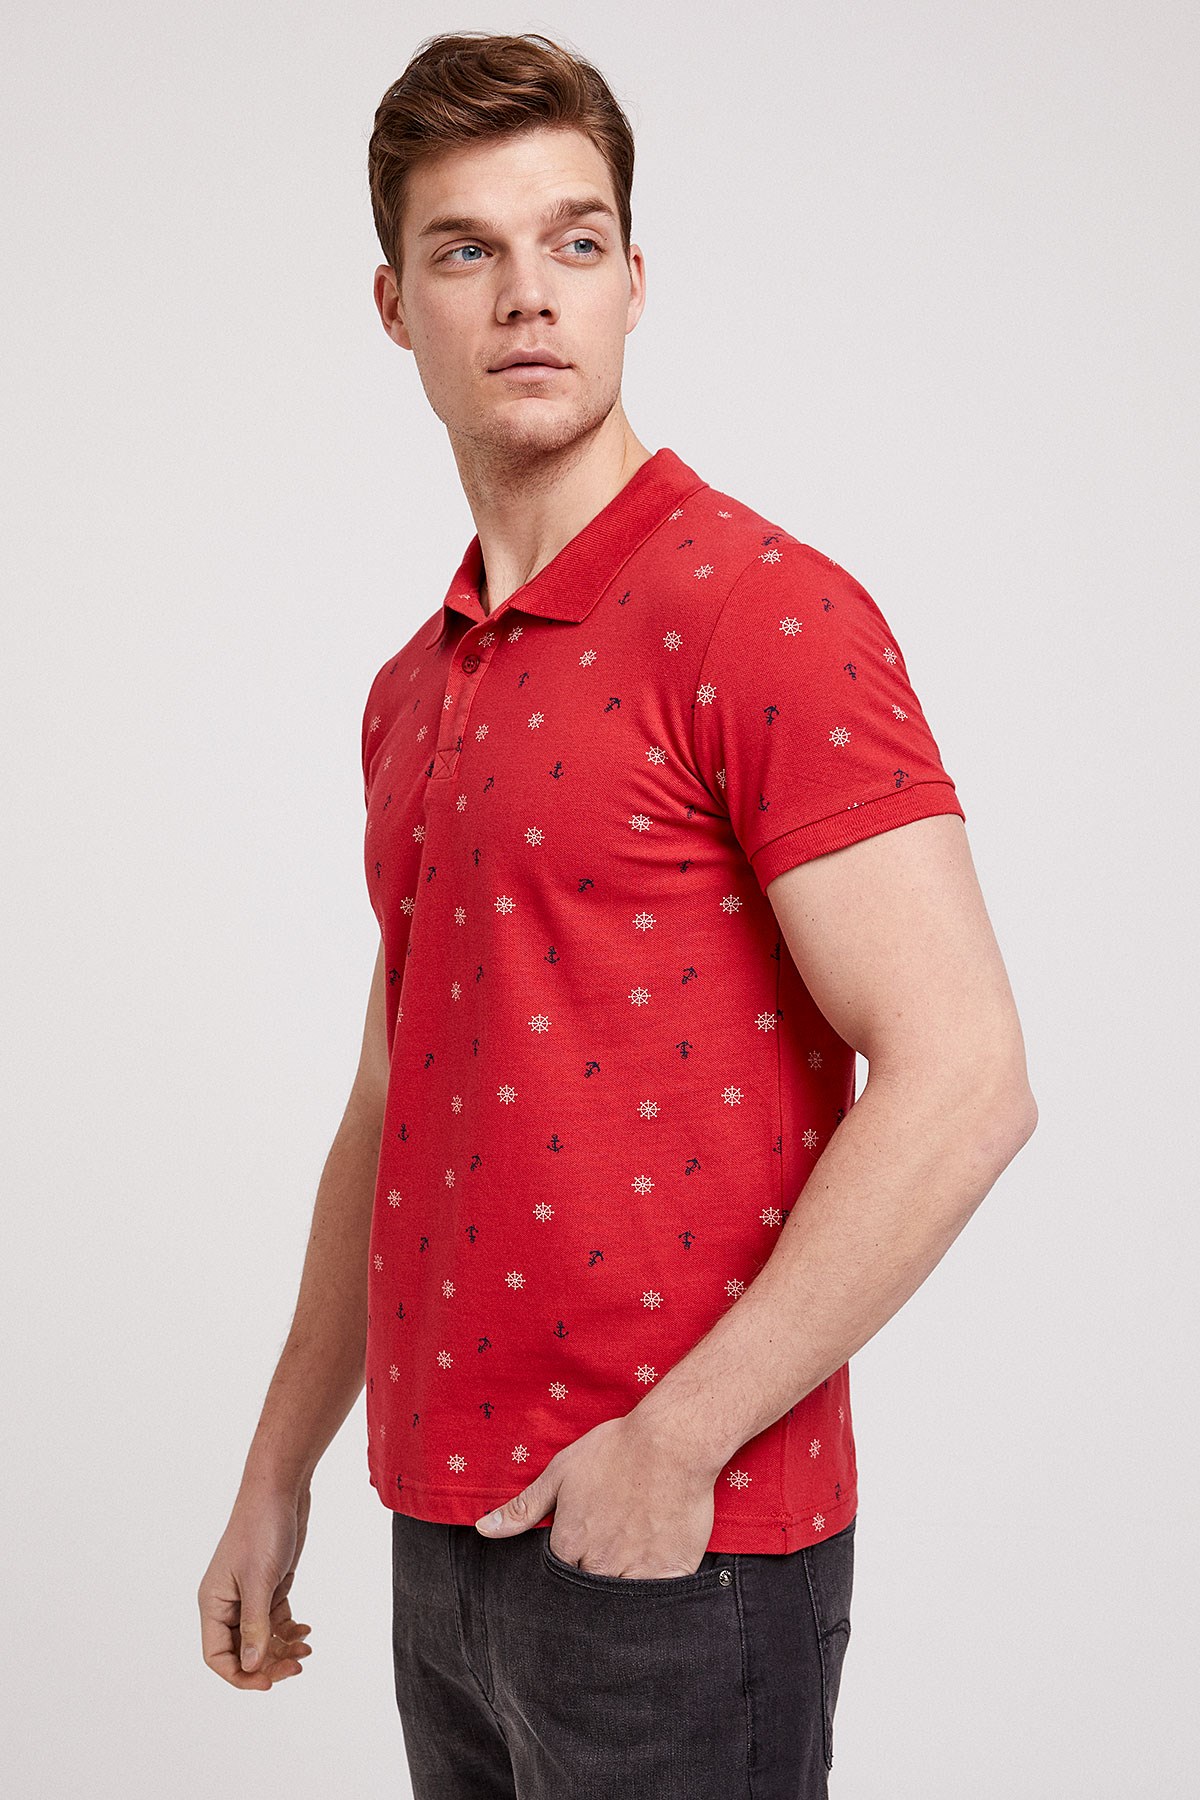 Lee Cooper Erkek T-Shirt 202 LCM 242043 Kırmızı